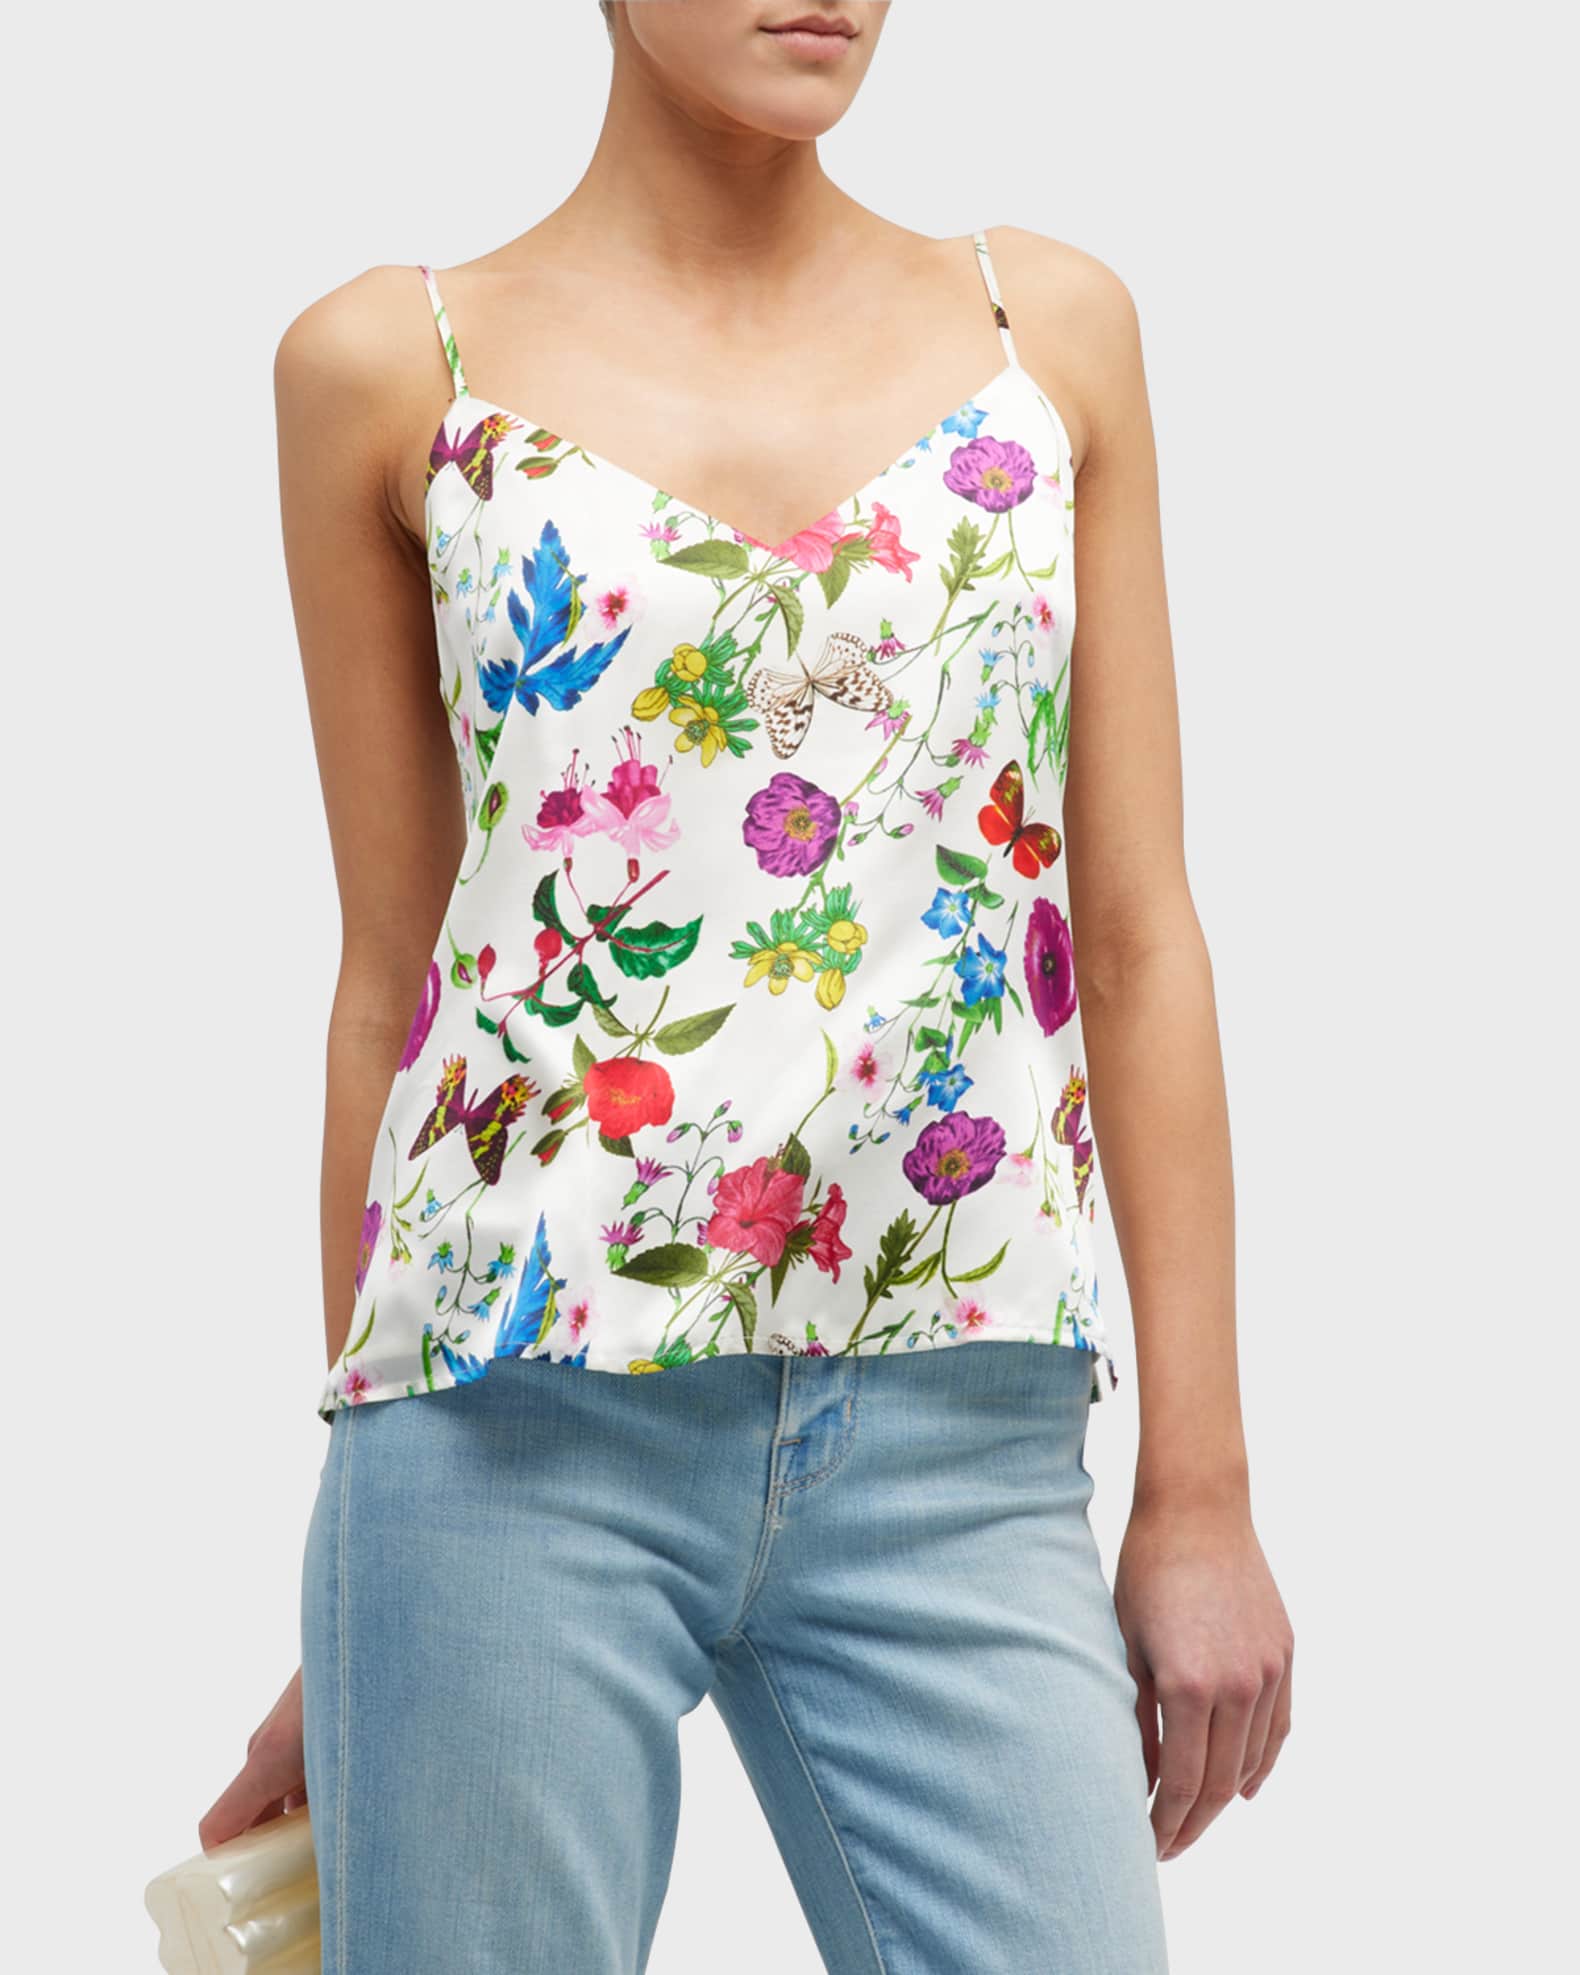 Louis Vuitton Women's Floral Roses Flower Camisole Blouse Tank Shirt